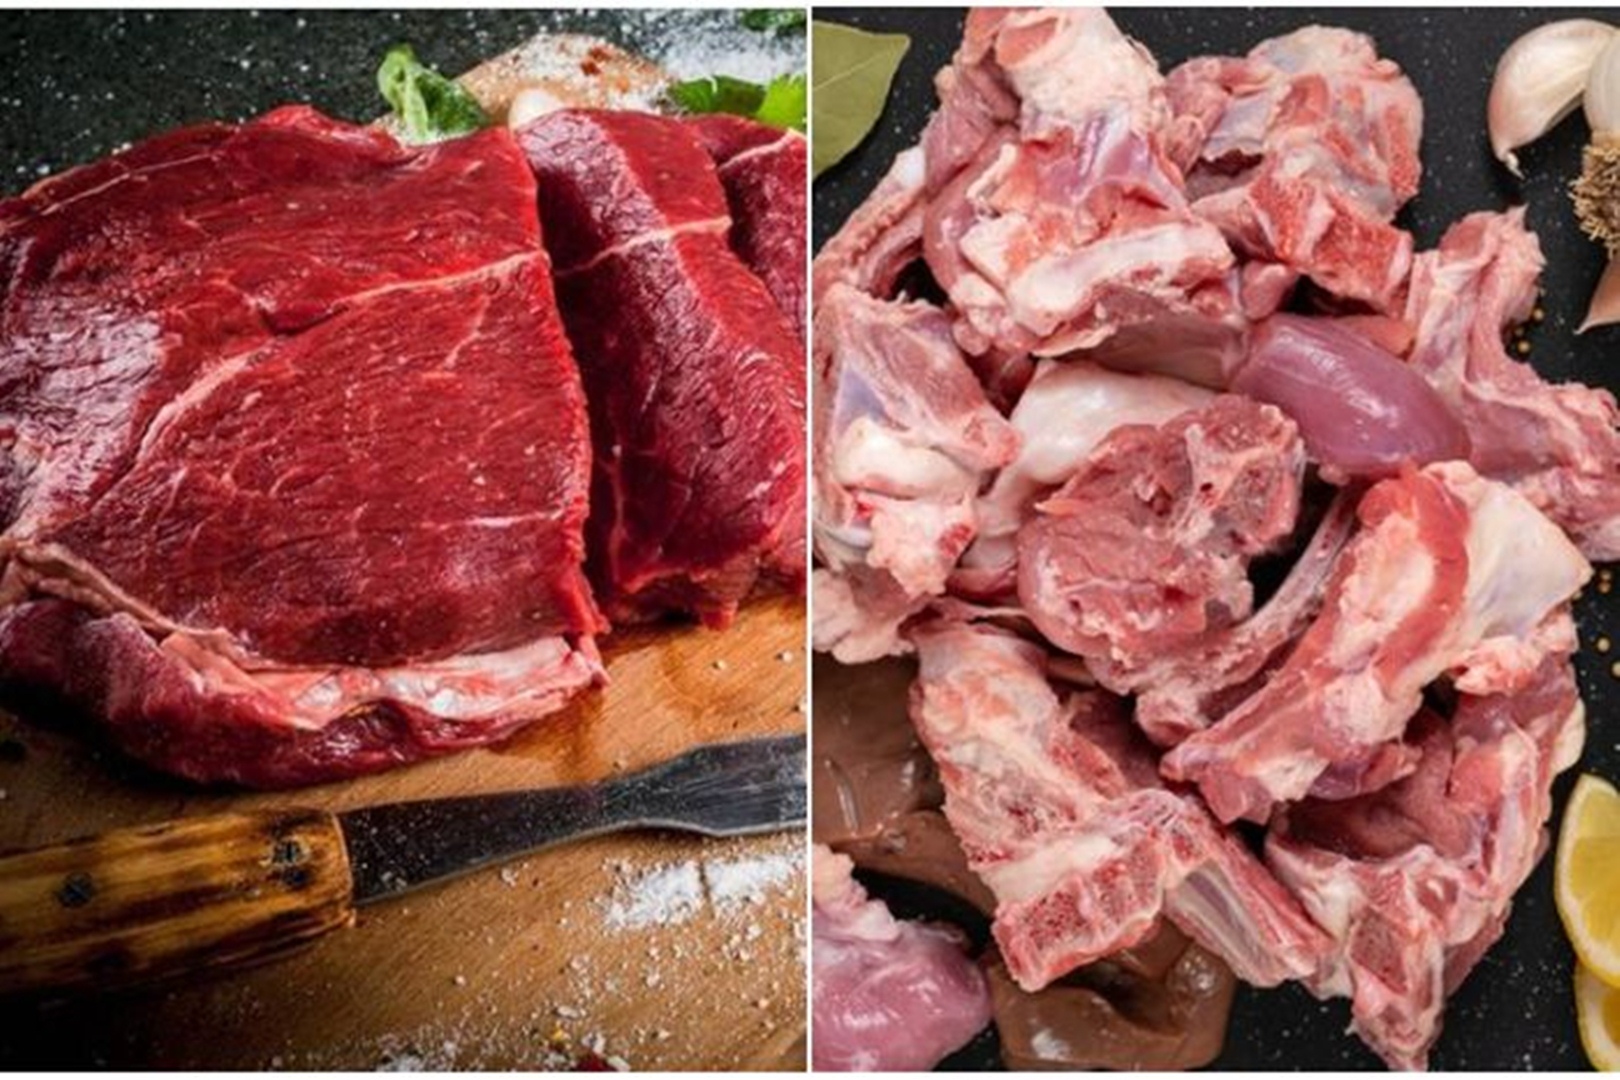 Begini Perbedaan Daging Sapi dan Kambing, Bunda Harus Tahu Nih Biar Gak Salah Masak